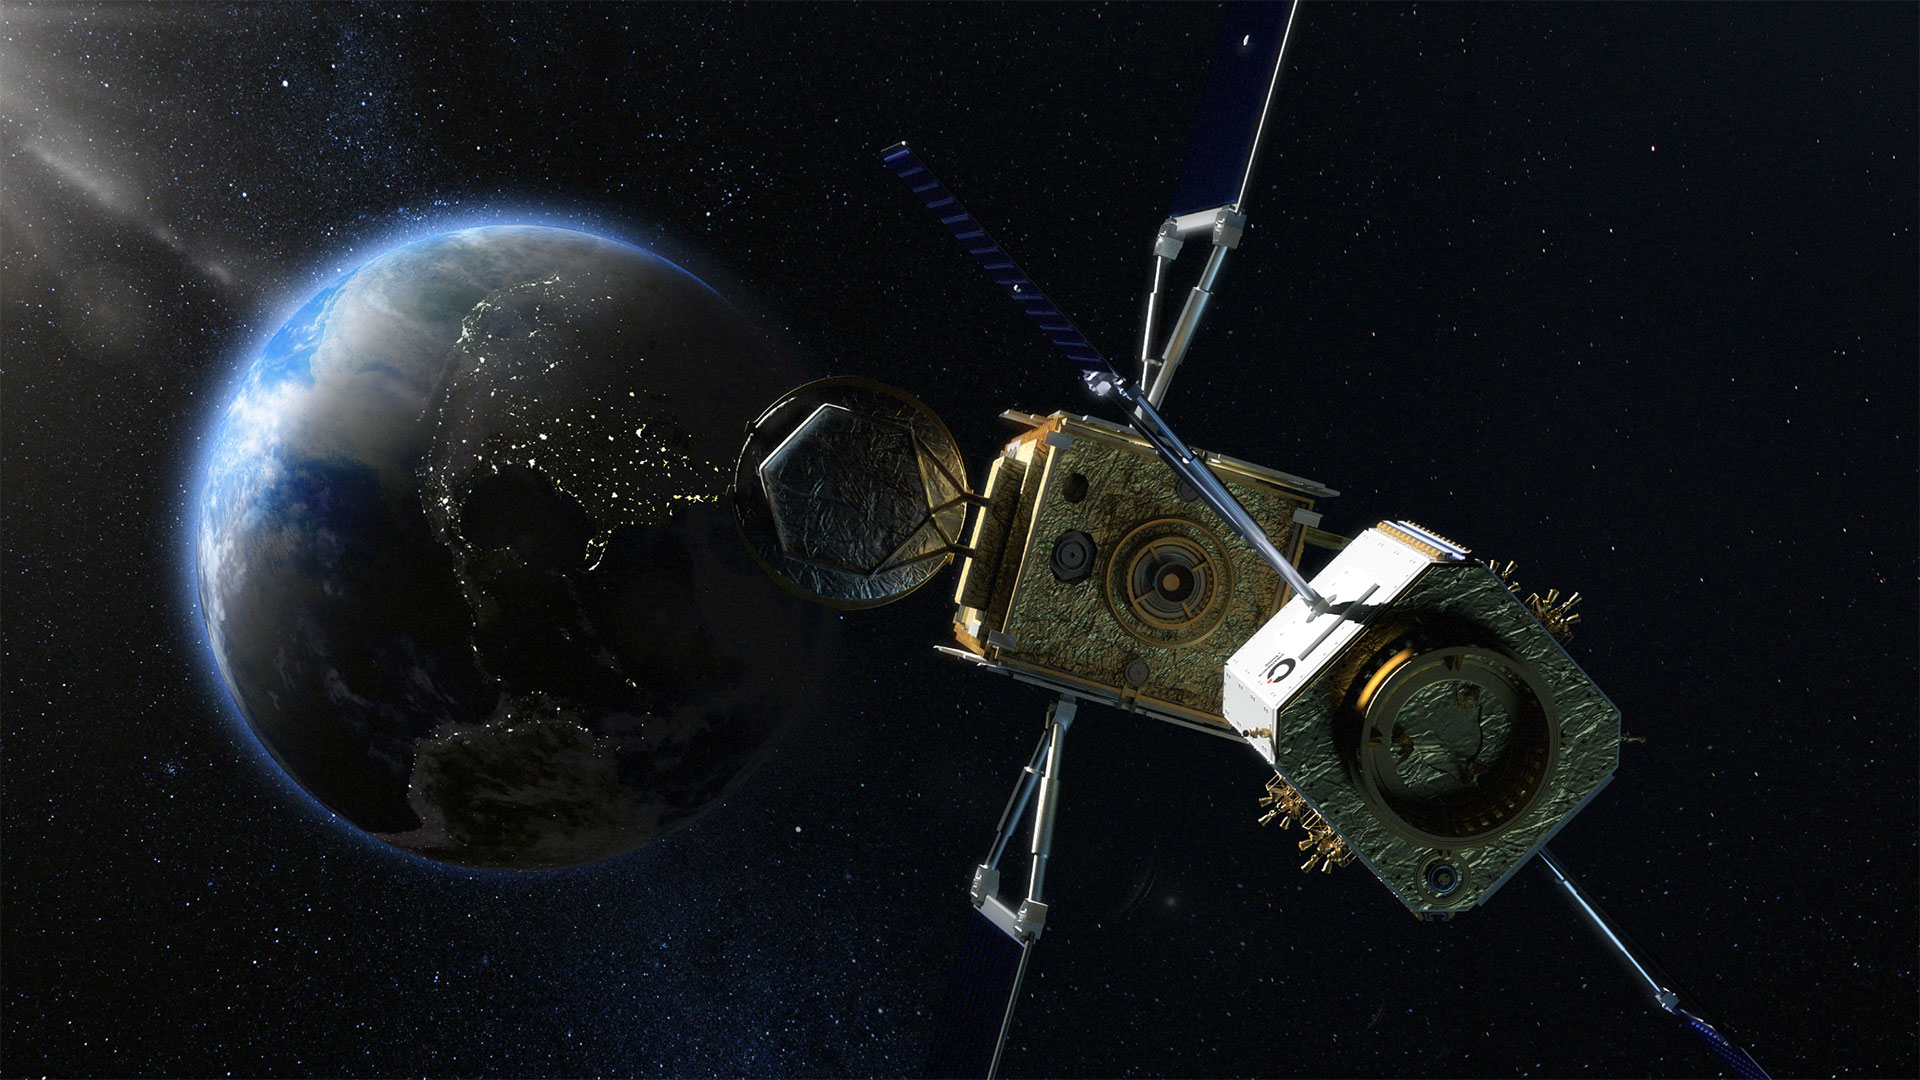 ClearSpace e Intelsat raggiungono un accordo sull’estensione vita dei satelliti geostazionari